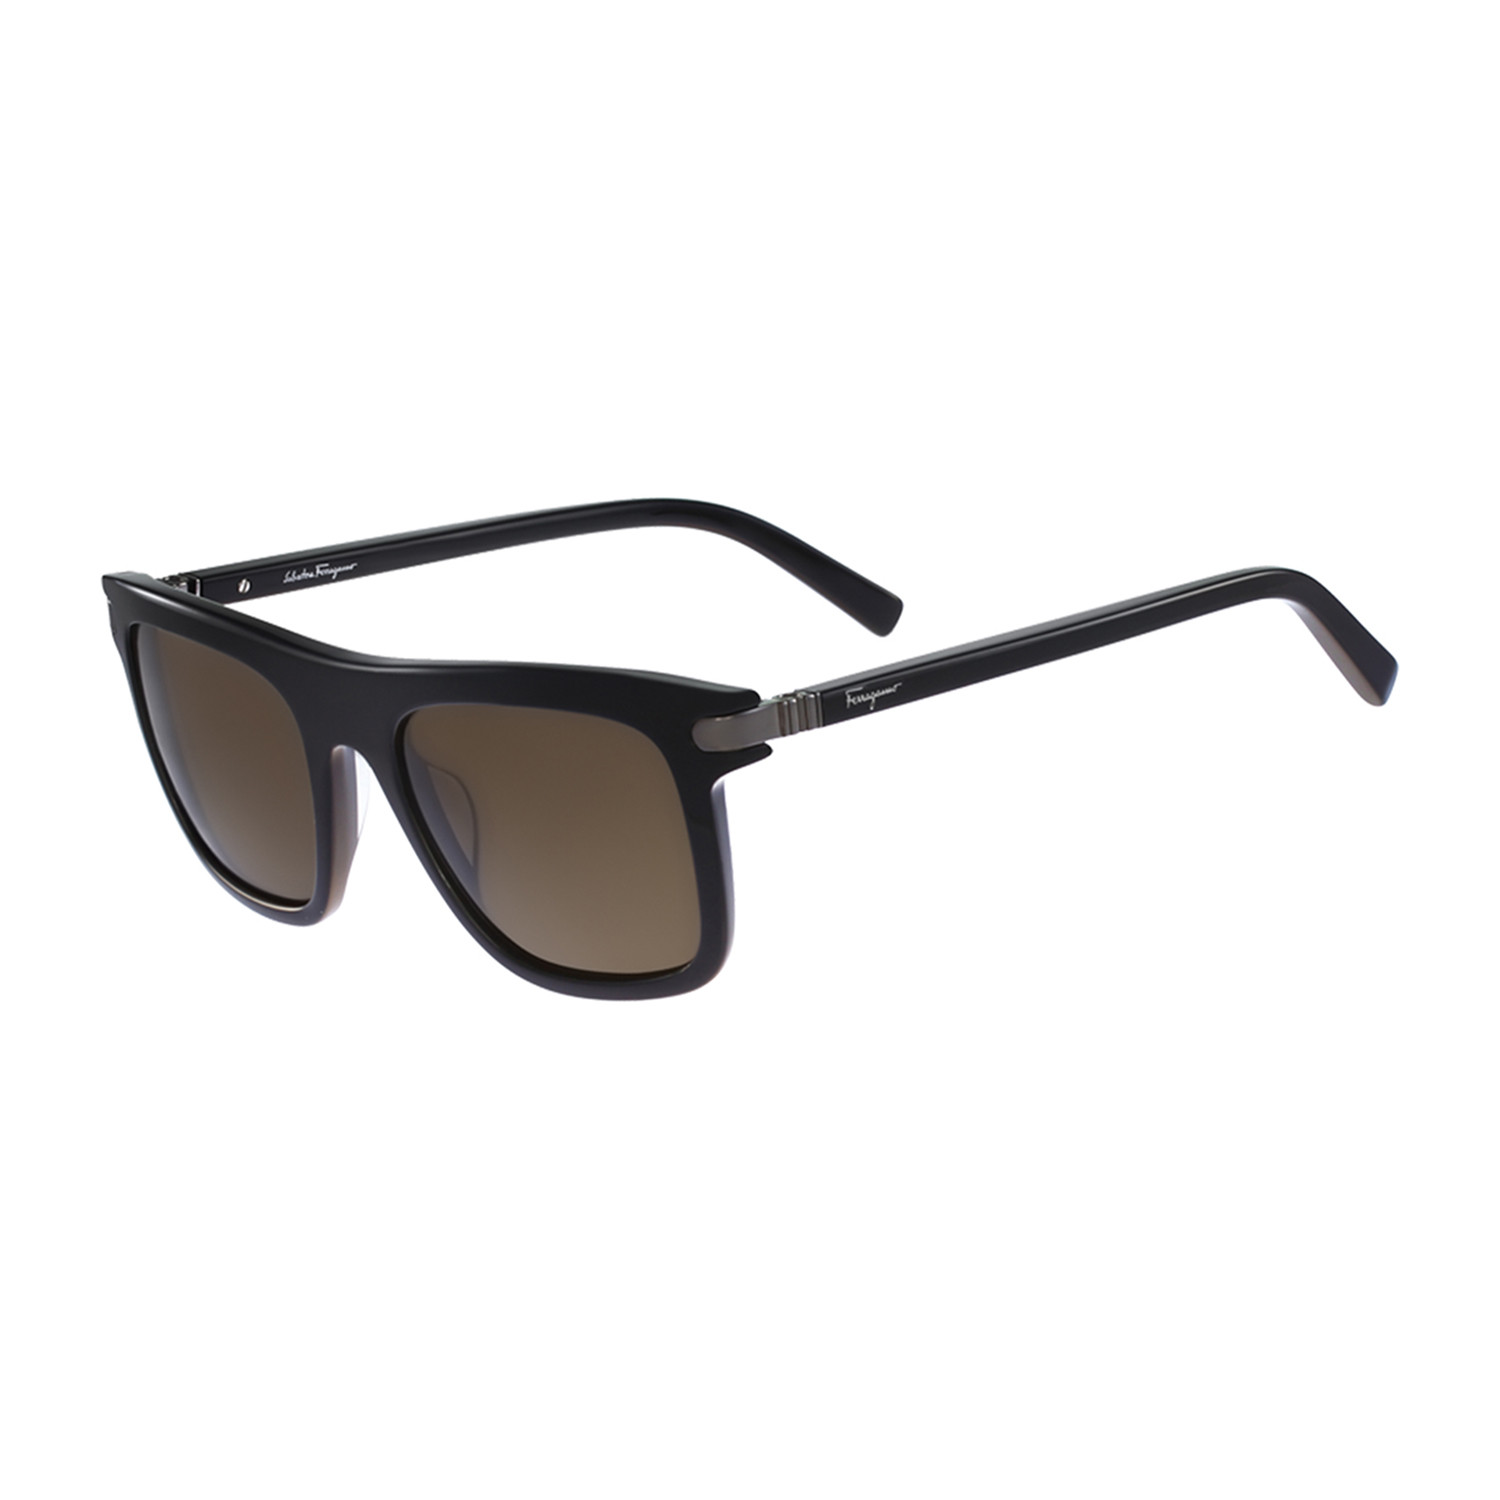 Men's Square Sunglasses // Black + Brown - Ferragamo - Touch of Modern